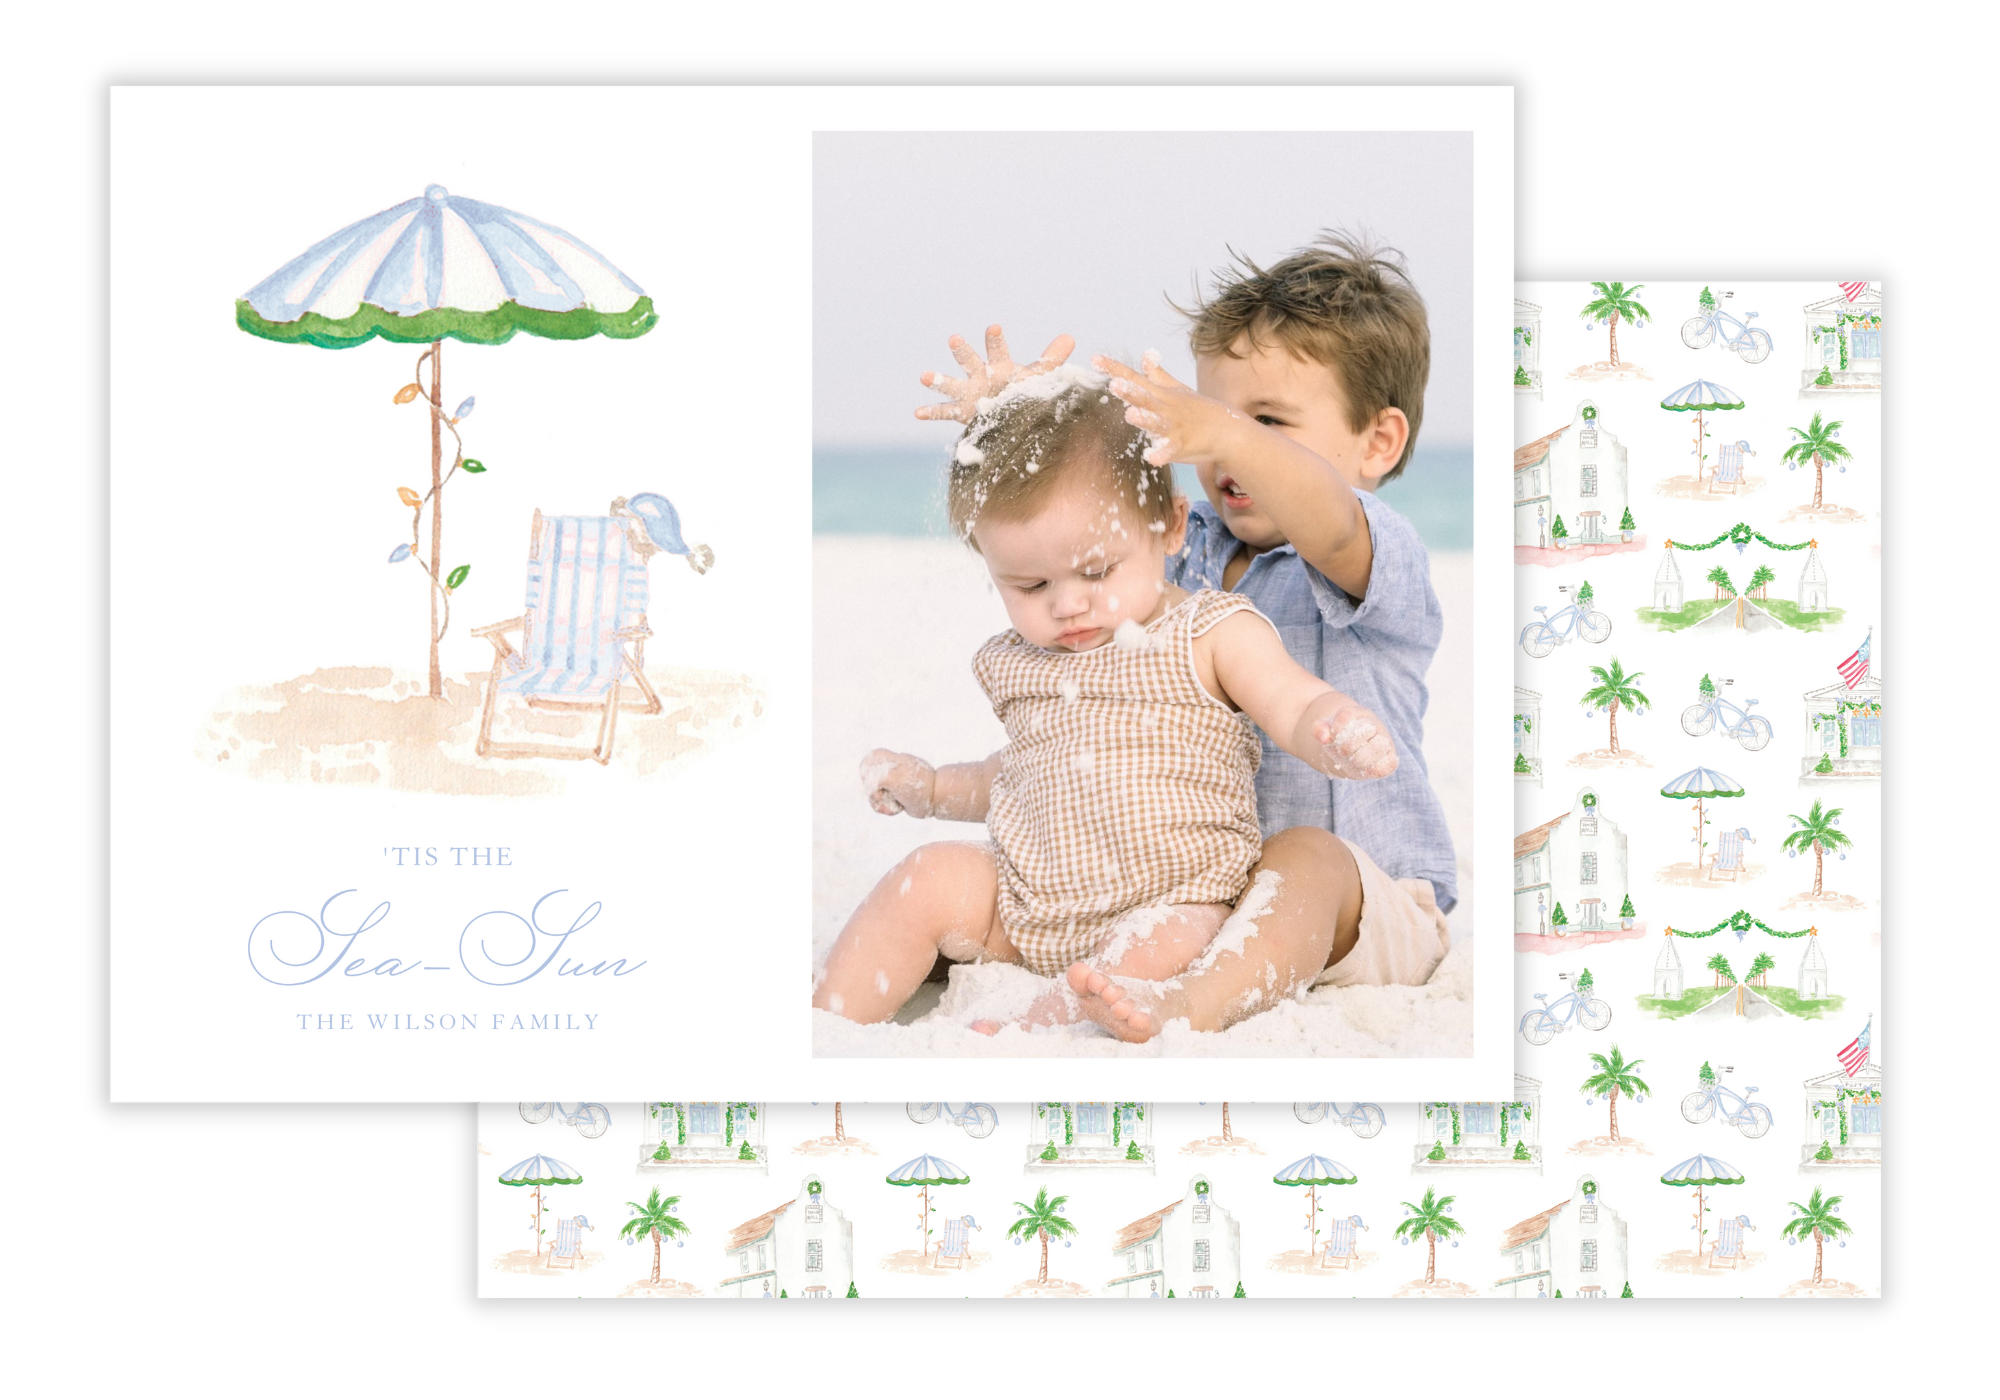 30A Beach Chair & Umbrella Holiday Card